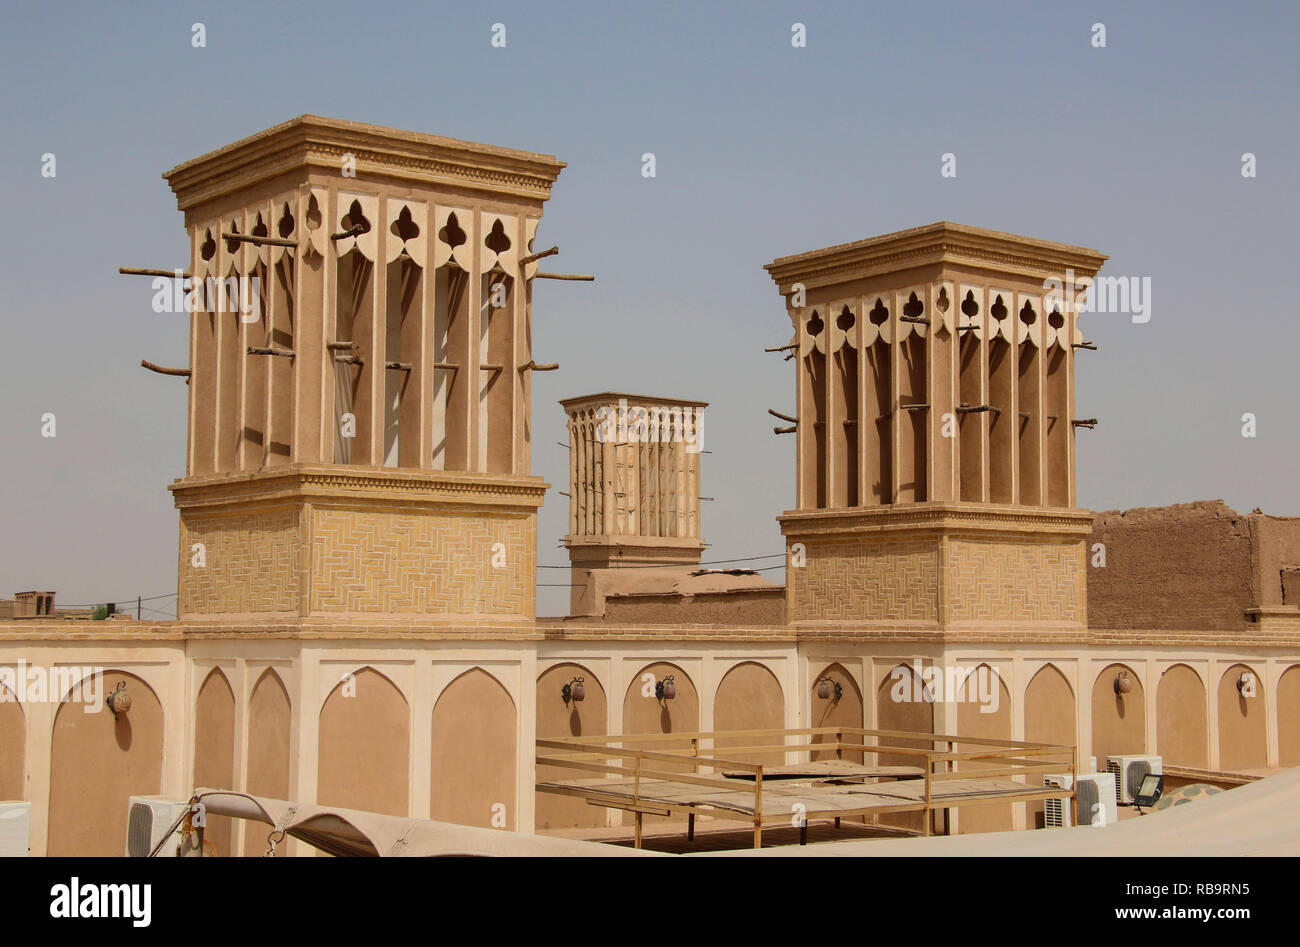 Wind Towers ist ein traditionellen Persischen architektonisches Element natürliche Belüftung in Gebäuden zu erstellen, Altstadt von Yazd, Iran. Stockfoto